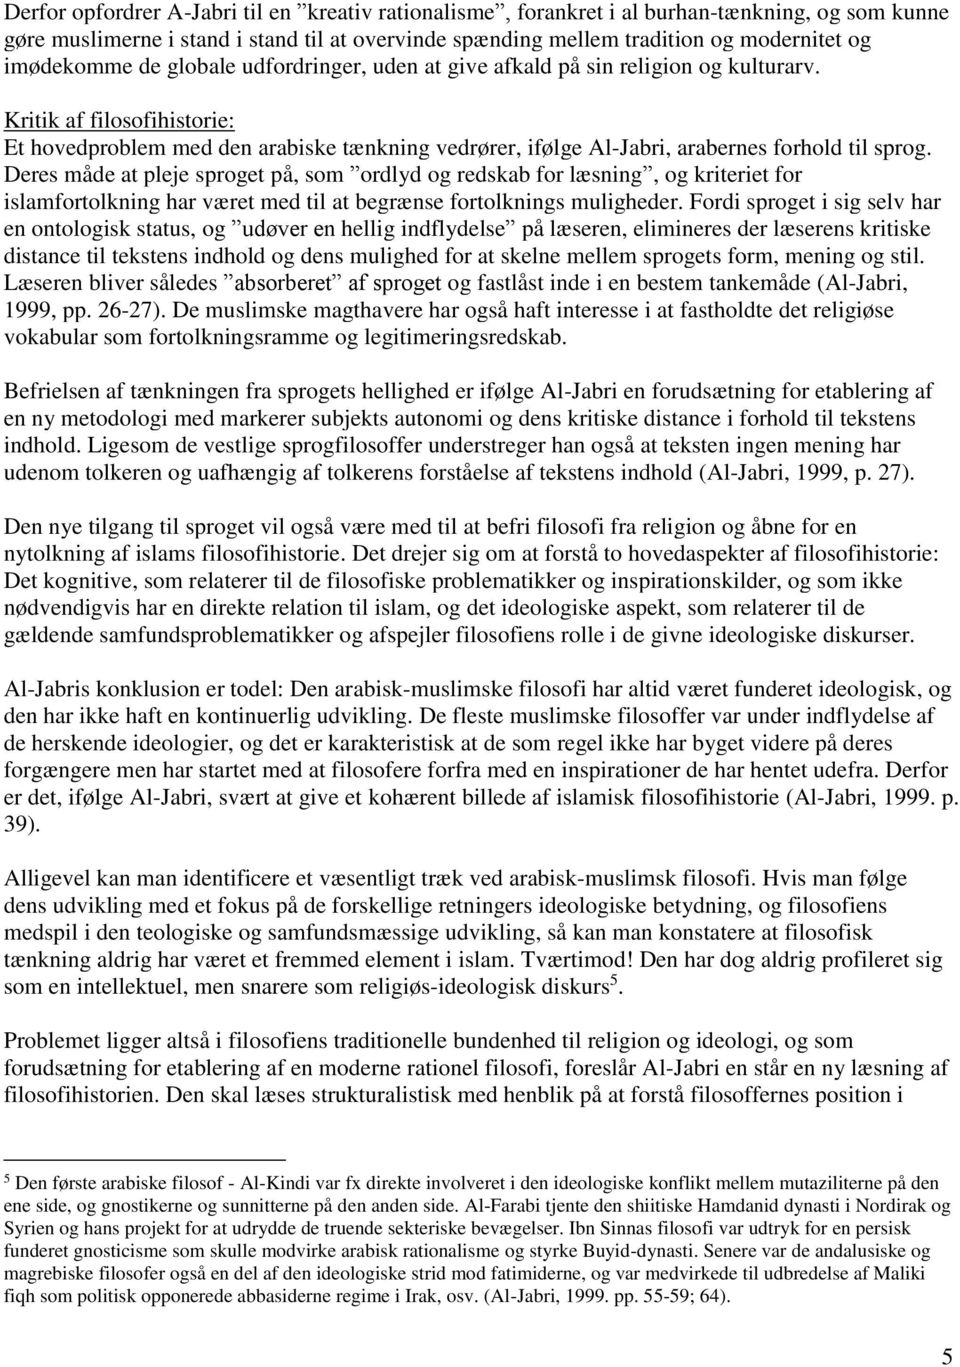 Kritik af filosofihistorie: Et hovedproblem med den arabiske tænkning vedrører, ifølge Al-Jabri, arabernes forhold til sprog.